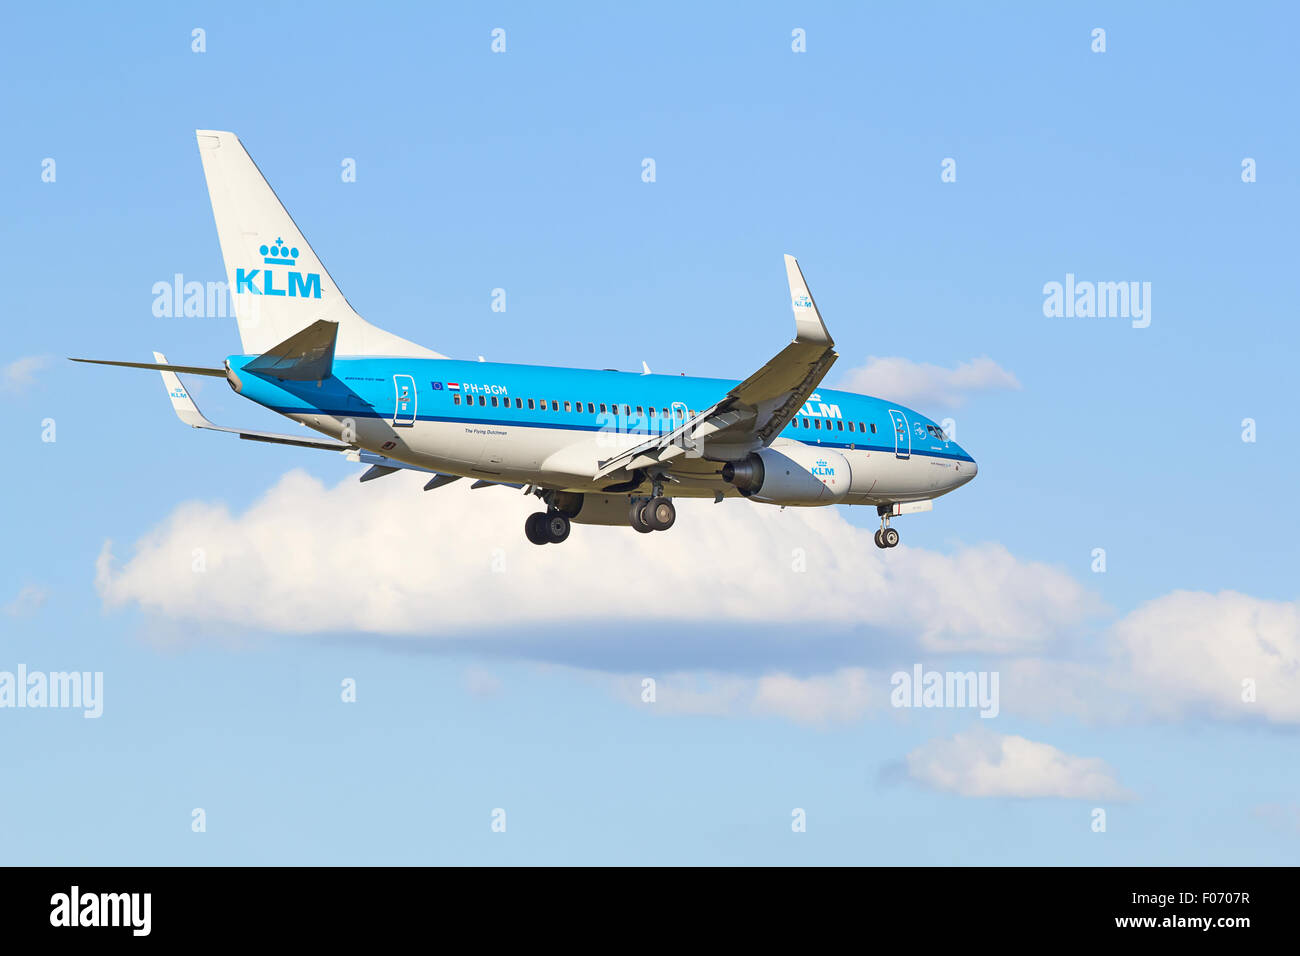 ZURICH - JULY 18: Boeing-737 KLM landing in Zurich after short haul flight on July 18, 2015 in Zurich, Switzerland. Zurich airpo Stock Photo